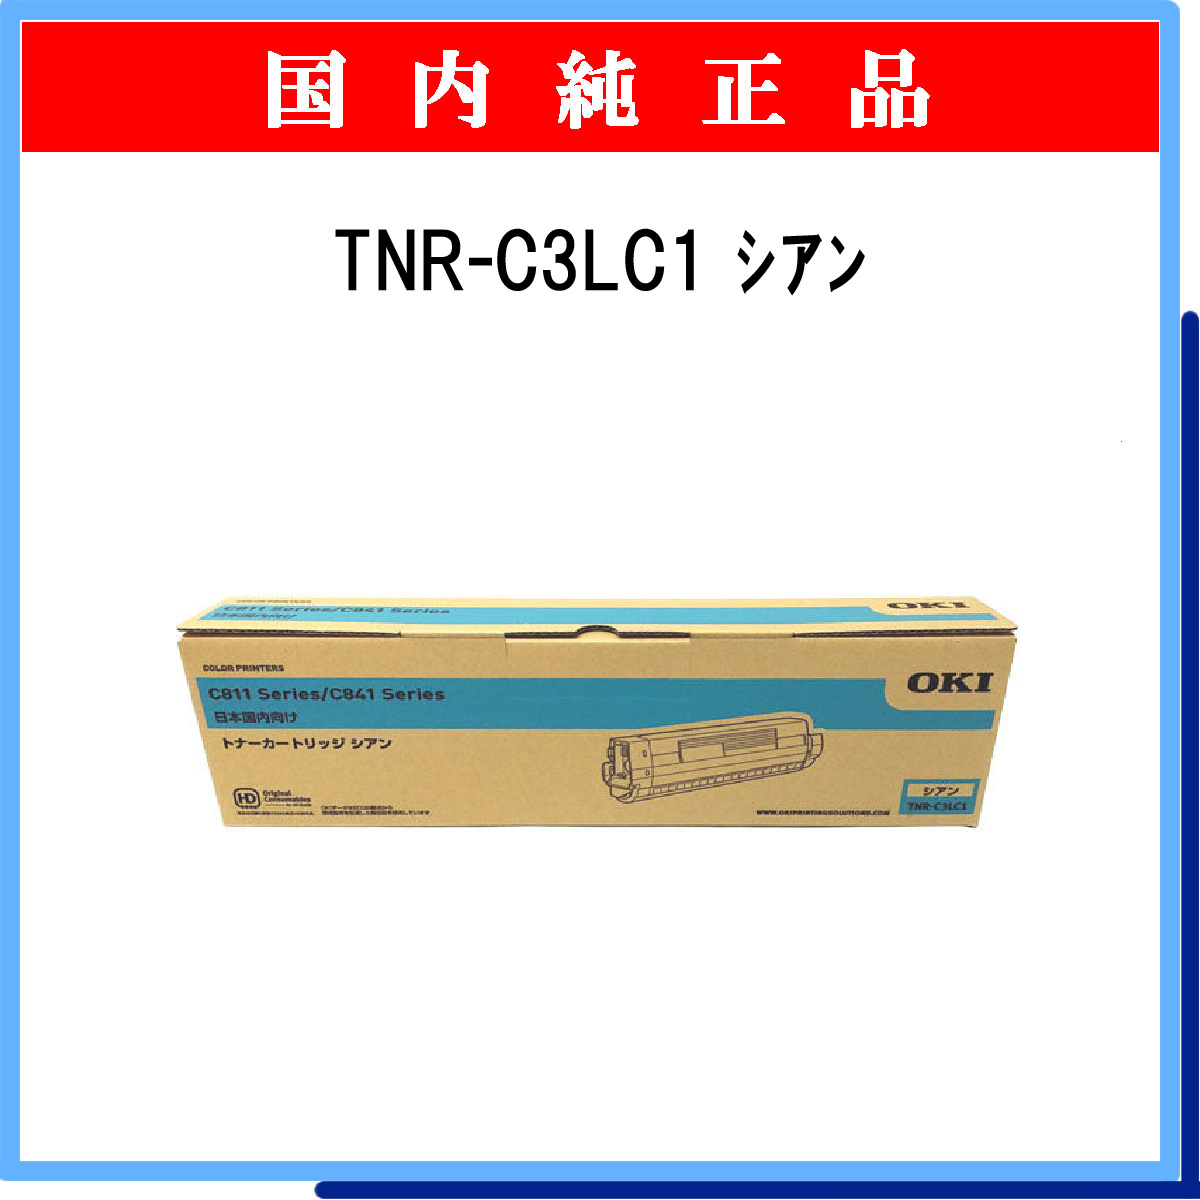 TNR-C3LC1 純正 - ウインドウを閉じる